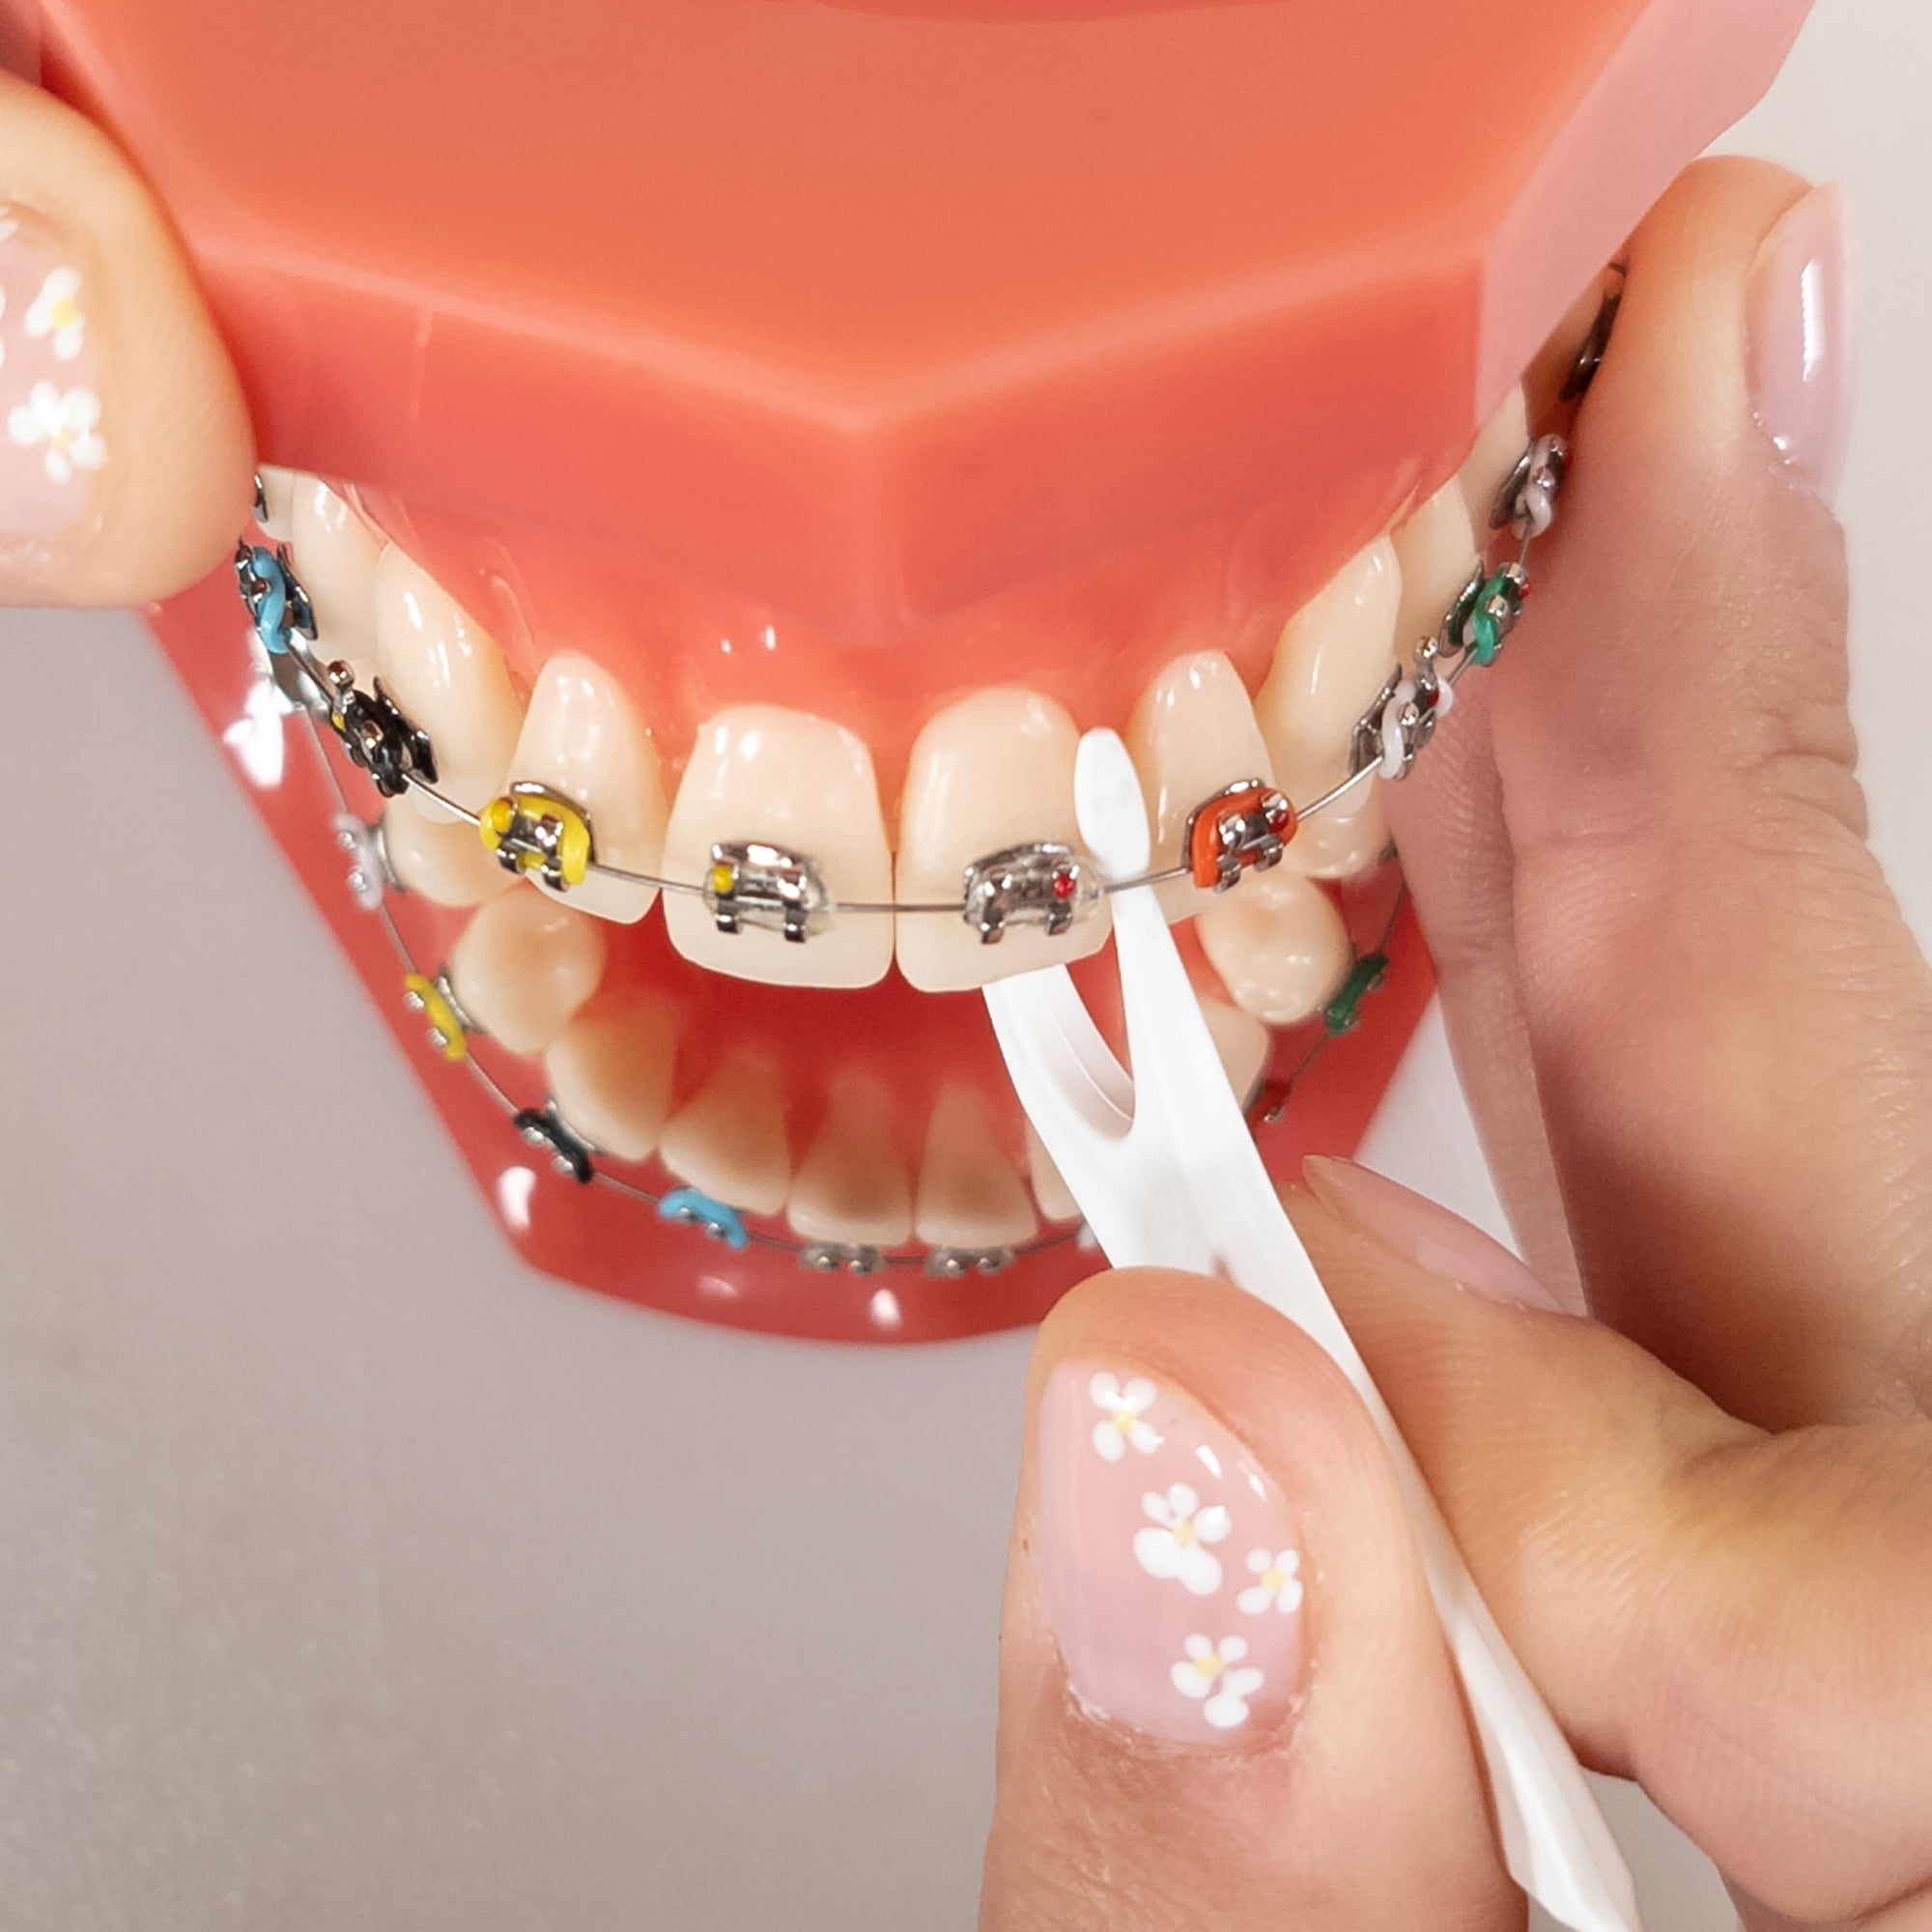 Dental Floss for Braces - Dental Floss Supplier